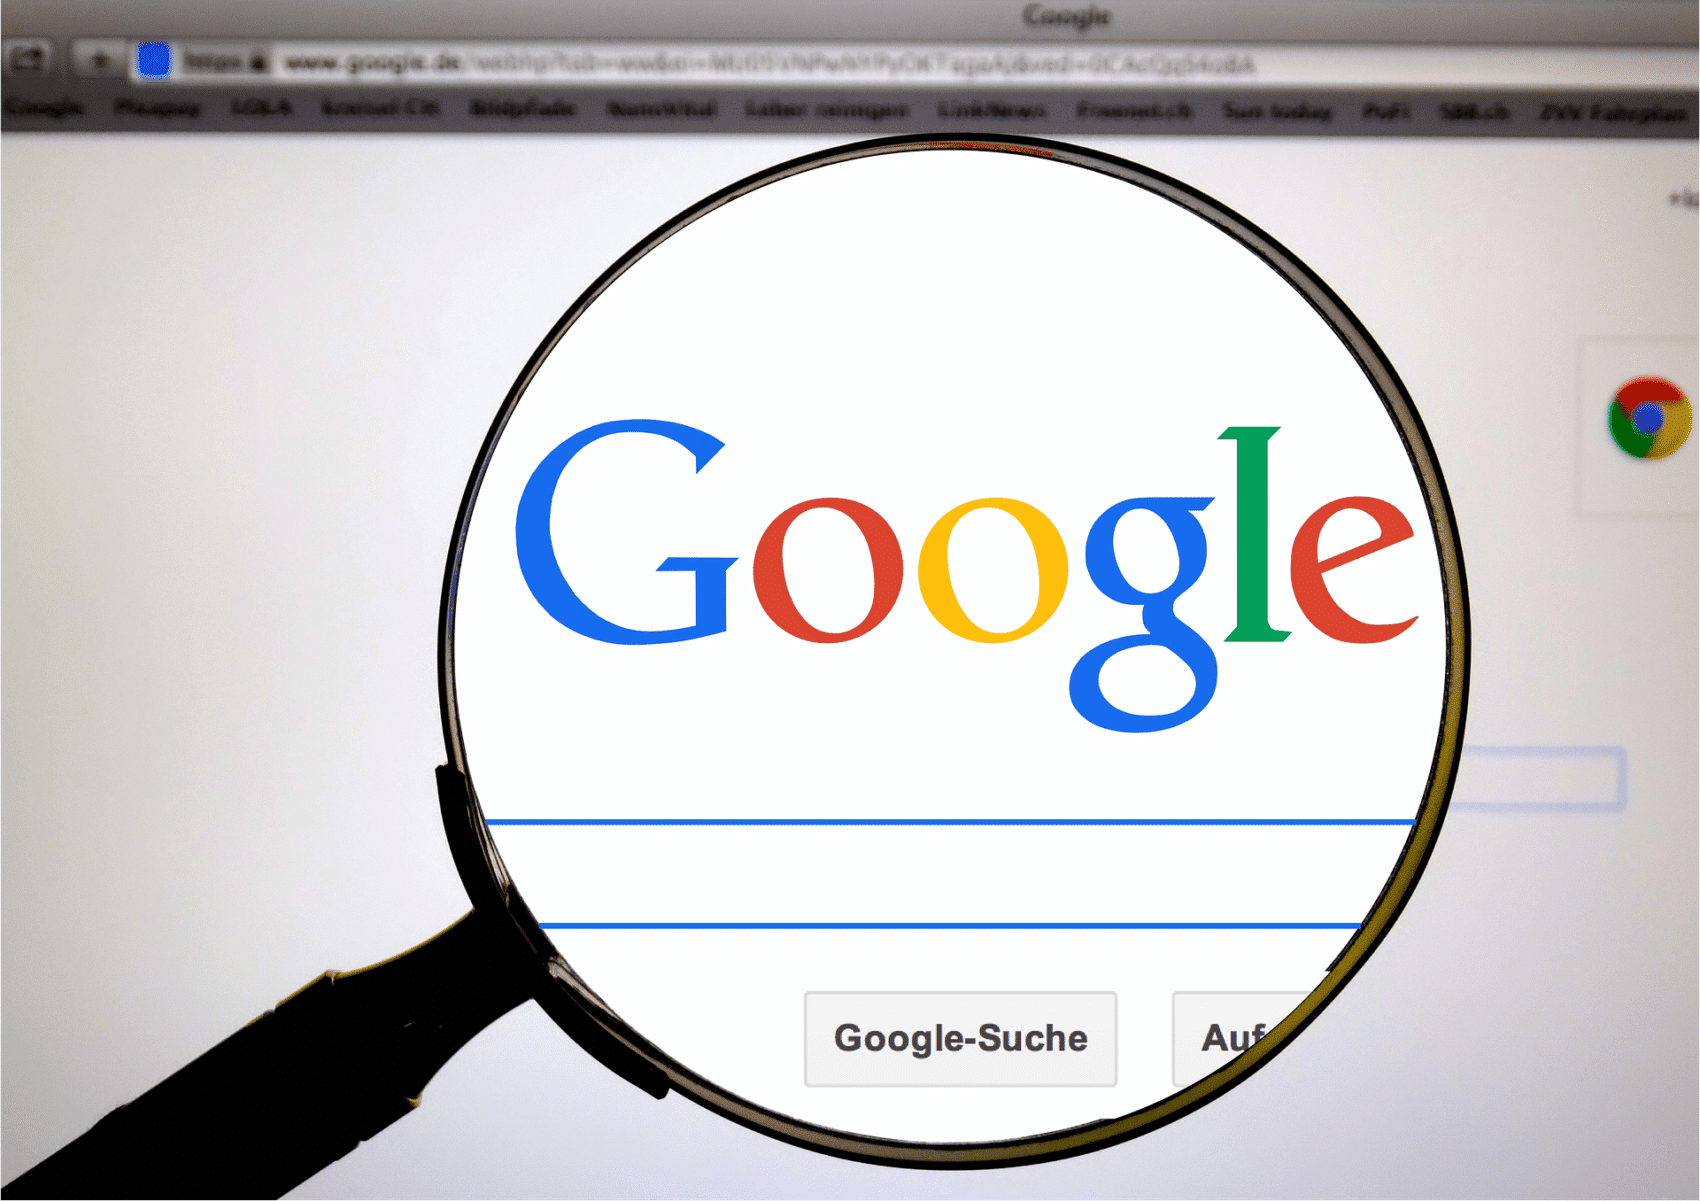 Google gehört zu den größten Internetunternehmen weltweit und betreibt in Europa derzeit vier Standorte. Ein fünfter Standort könnte in Villach entstehen.